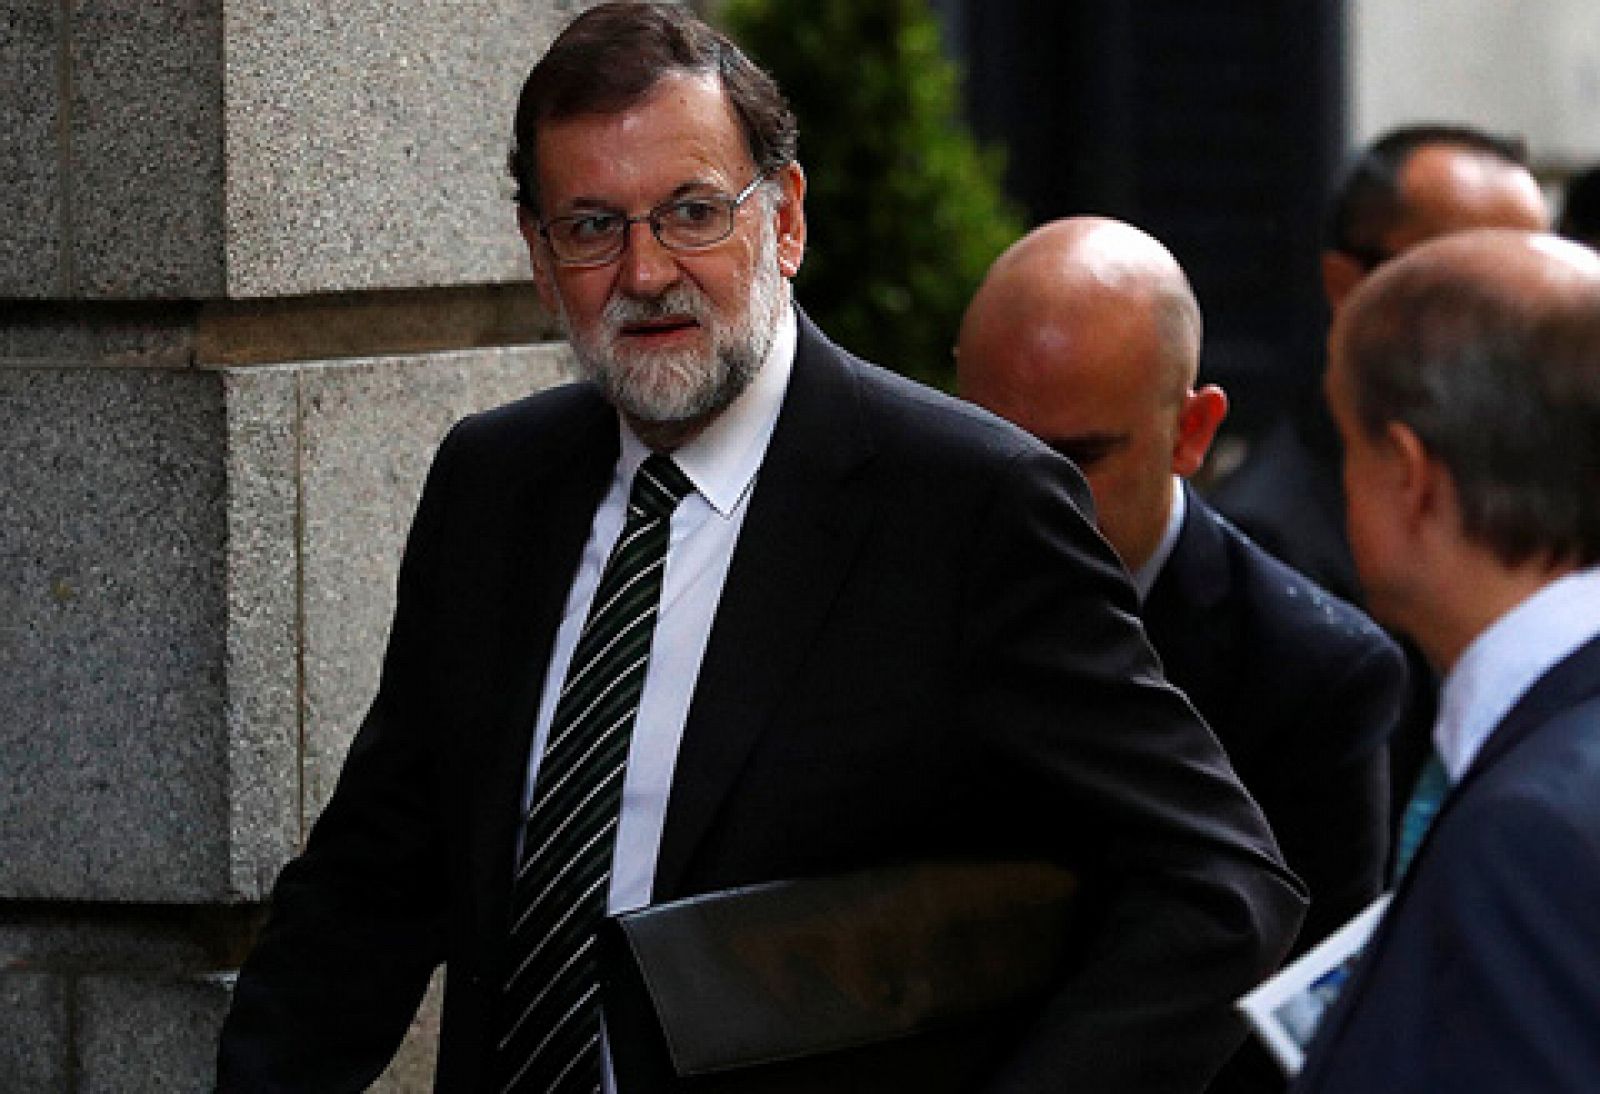 El Gobierno no aplicará el 155 si Puigdemont convoca elecciones autonómicas